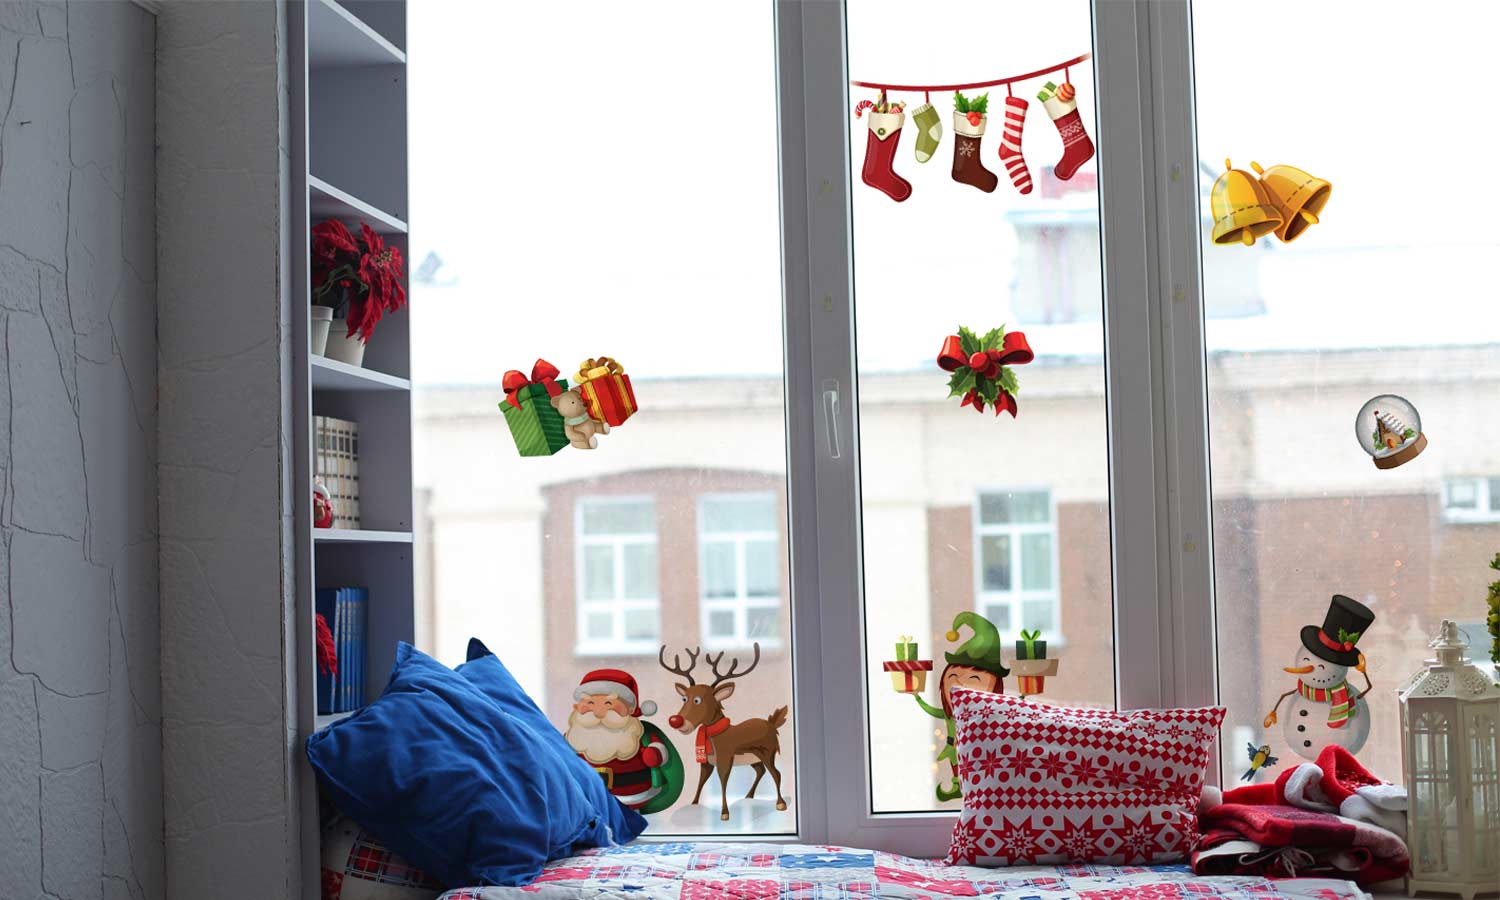 Božične nalepke za okna Božični duh - Dekoracija za okna WLB005 - Life-decor.si